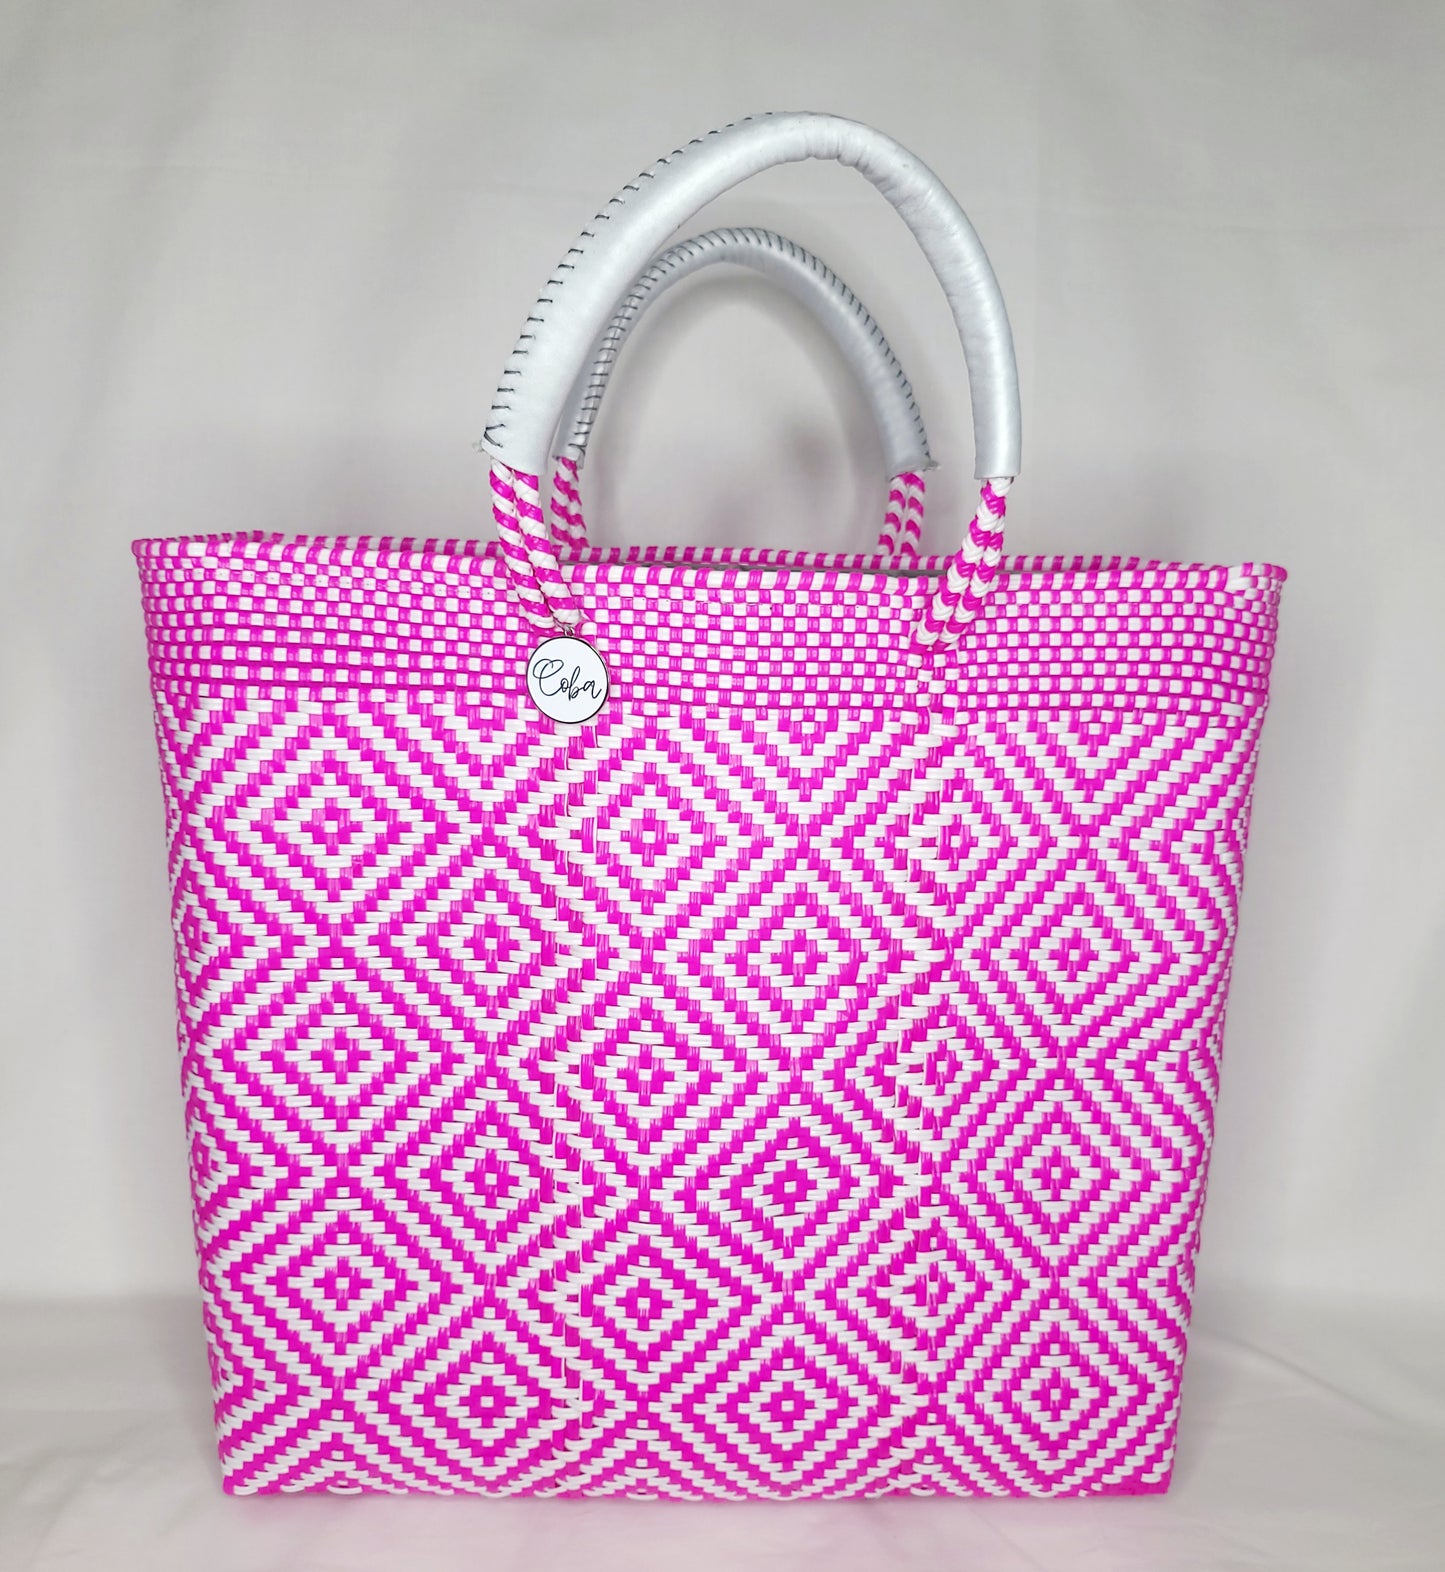 Lola Large Bag - Hot Pink Diamond